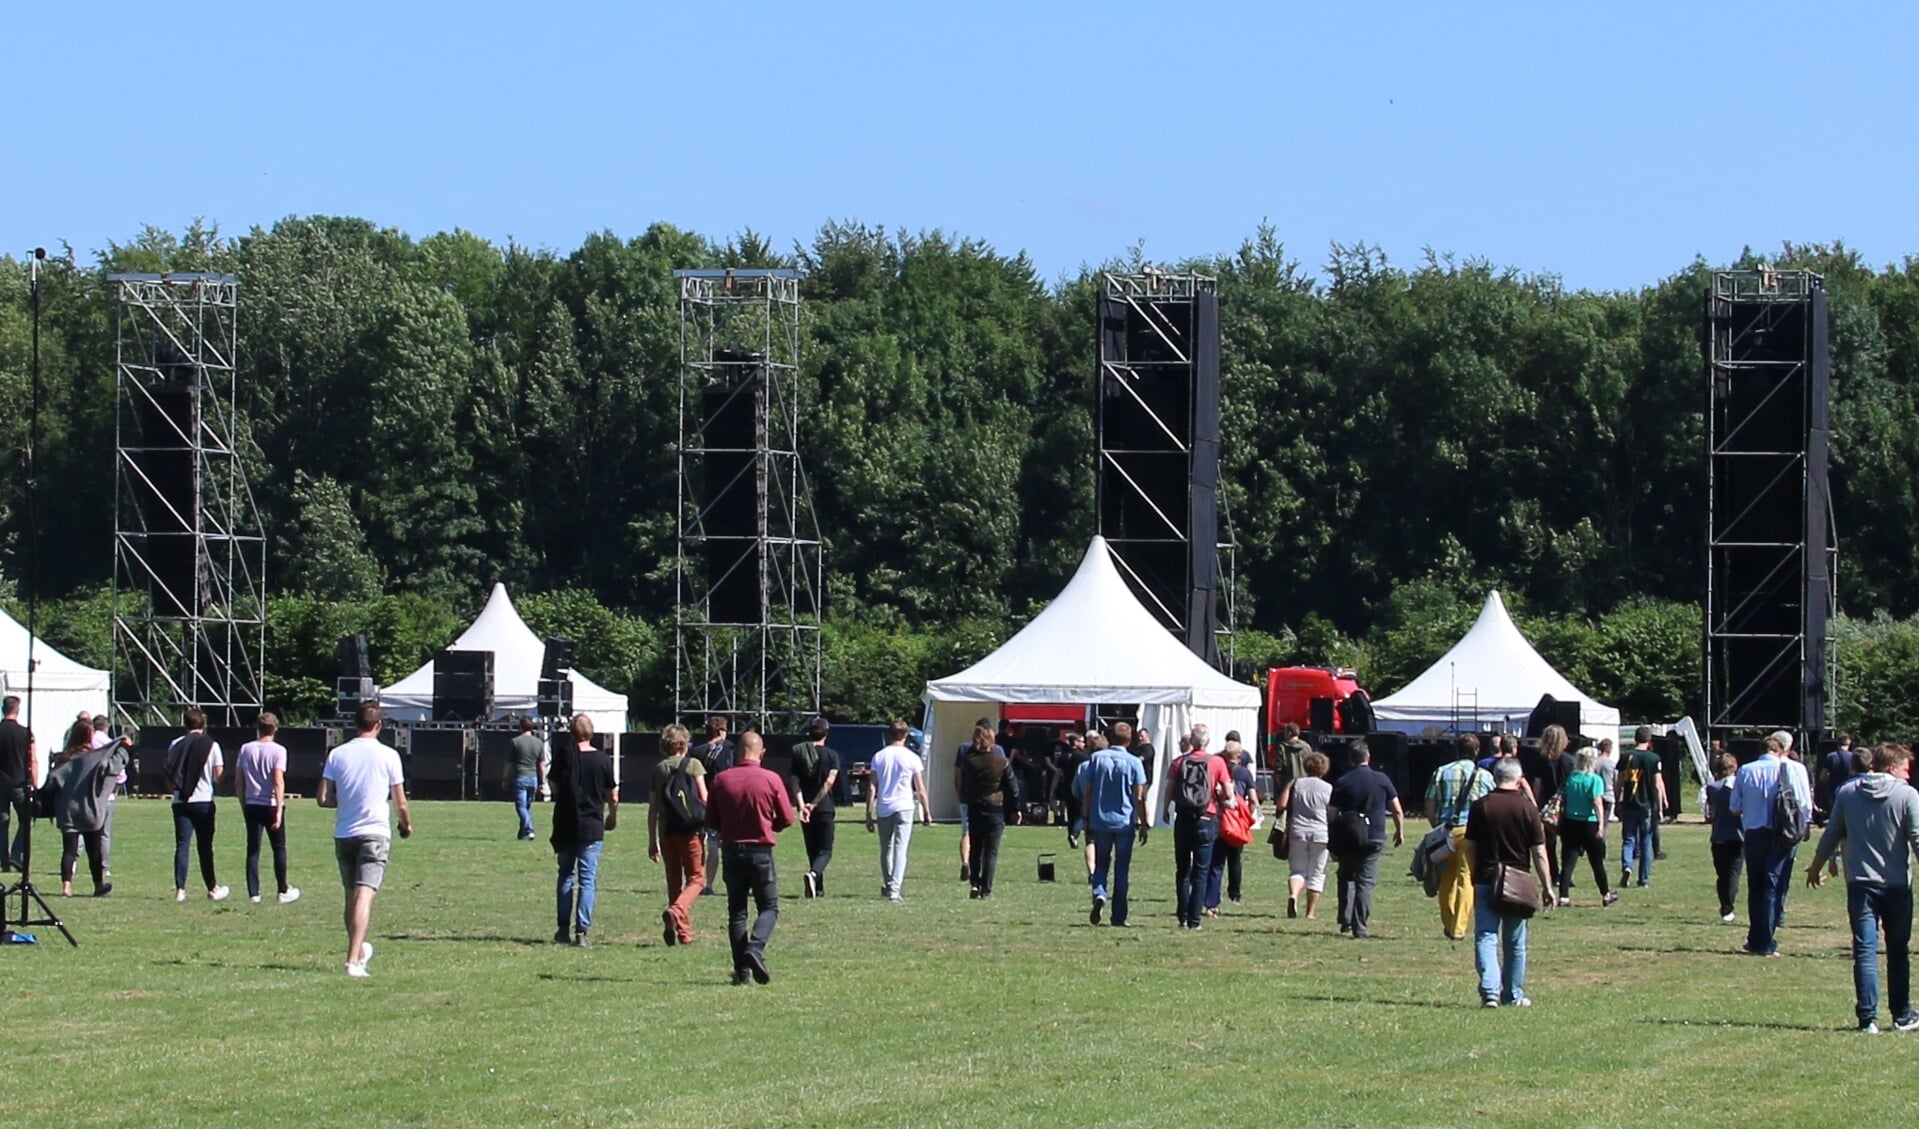 Het Land van Bosse in Amsterdamse Bos. In juni 2018 werd hier een geluidstest voor grote evenementen gehouden.